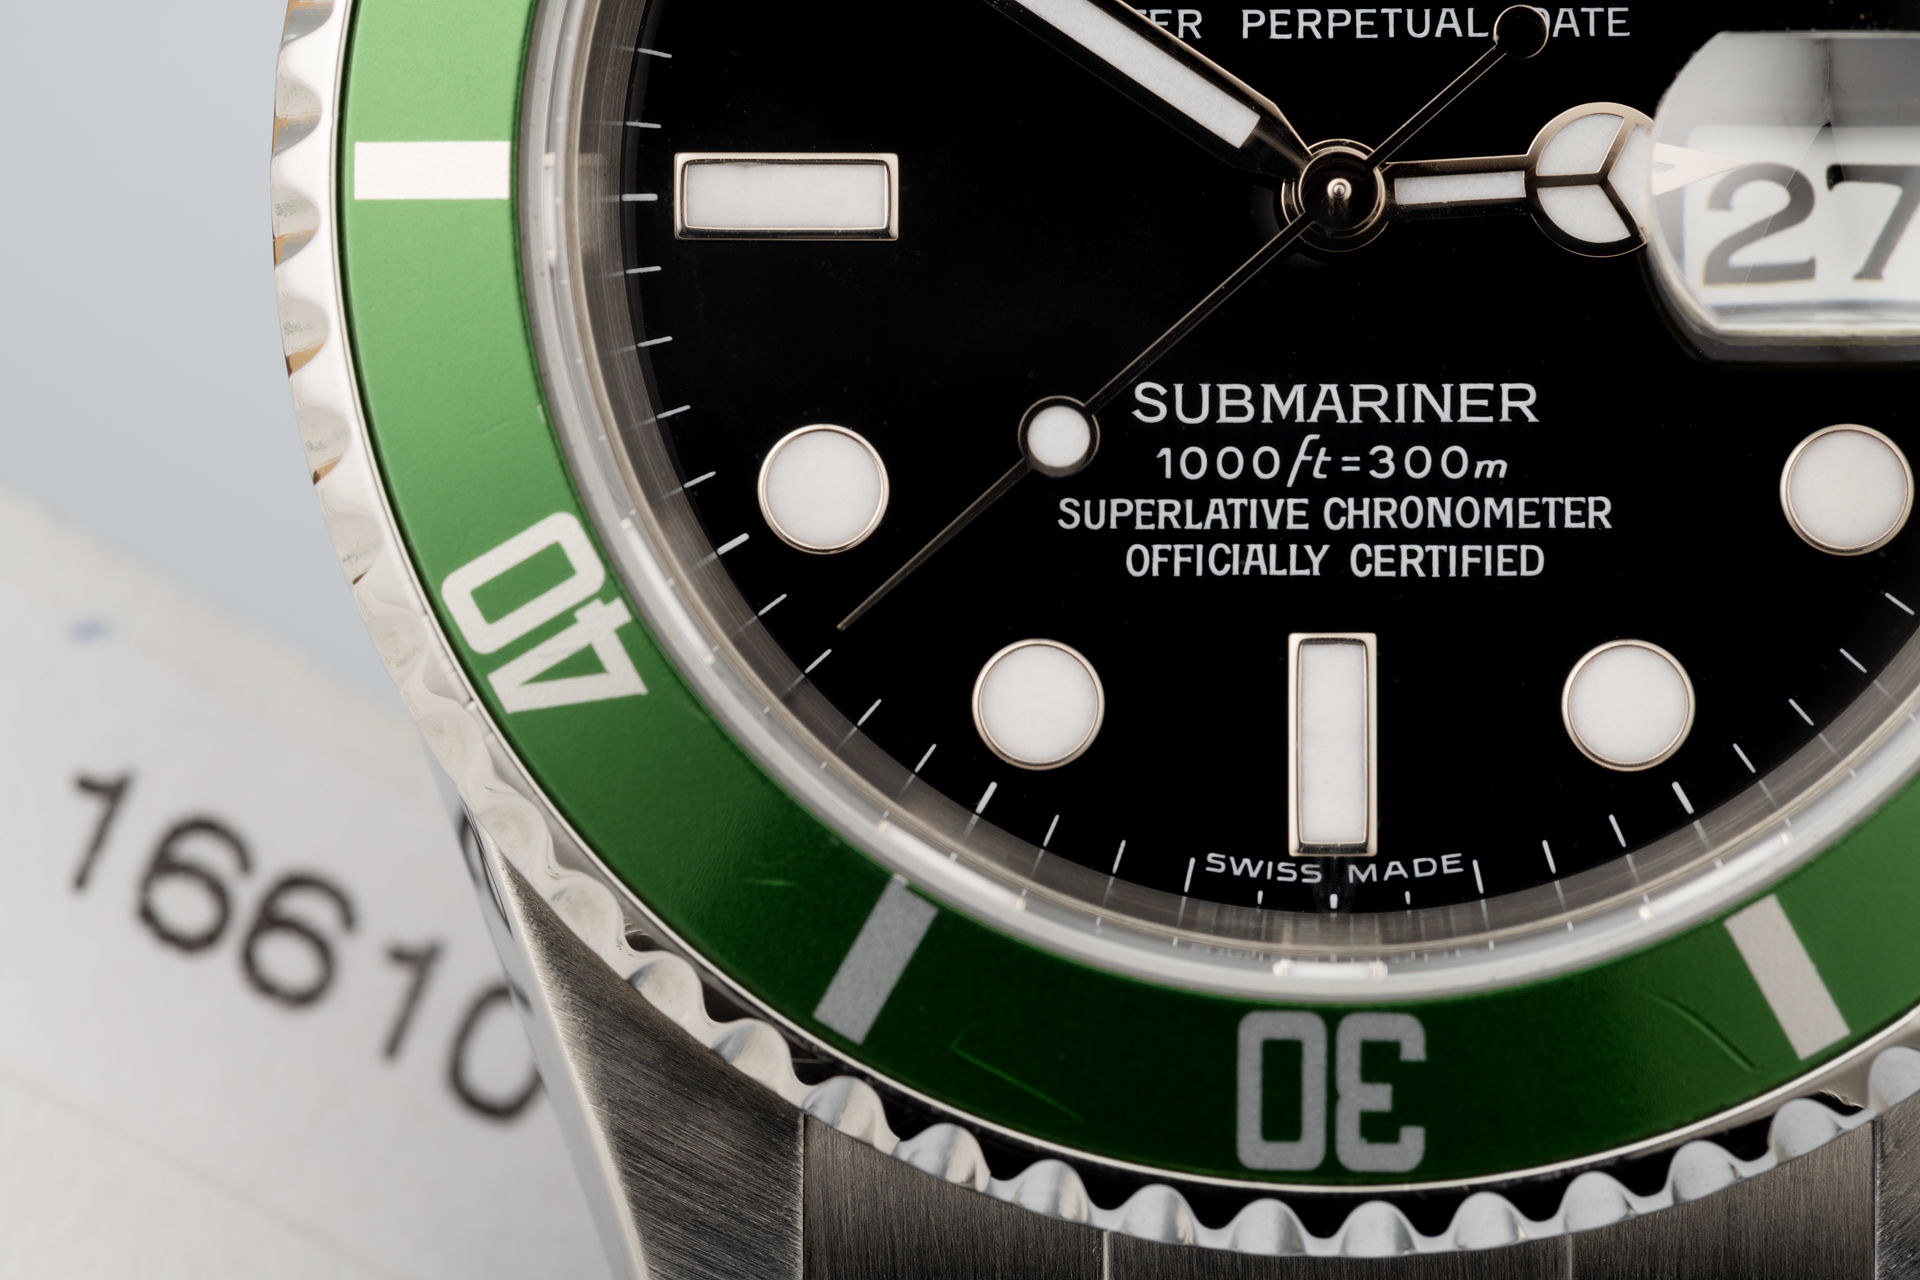 ref 16610LV | Green bezel 'Full Set' | Rolex Submariner Date